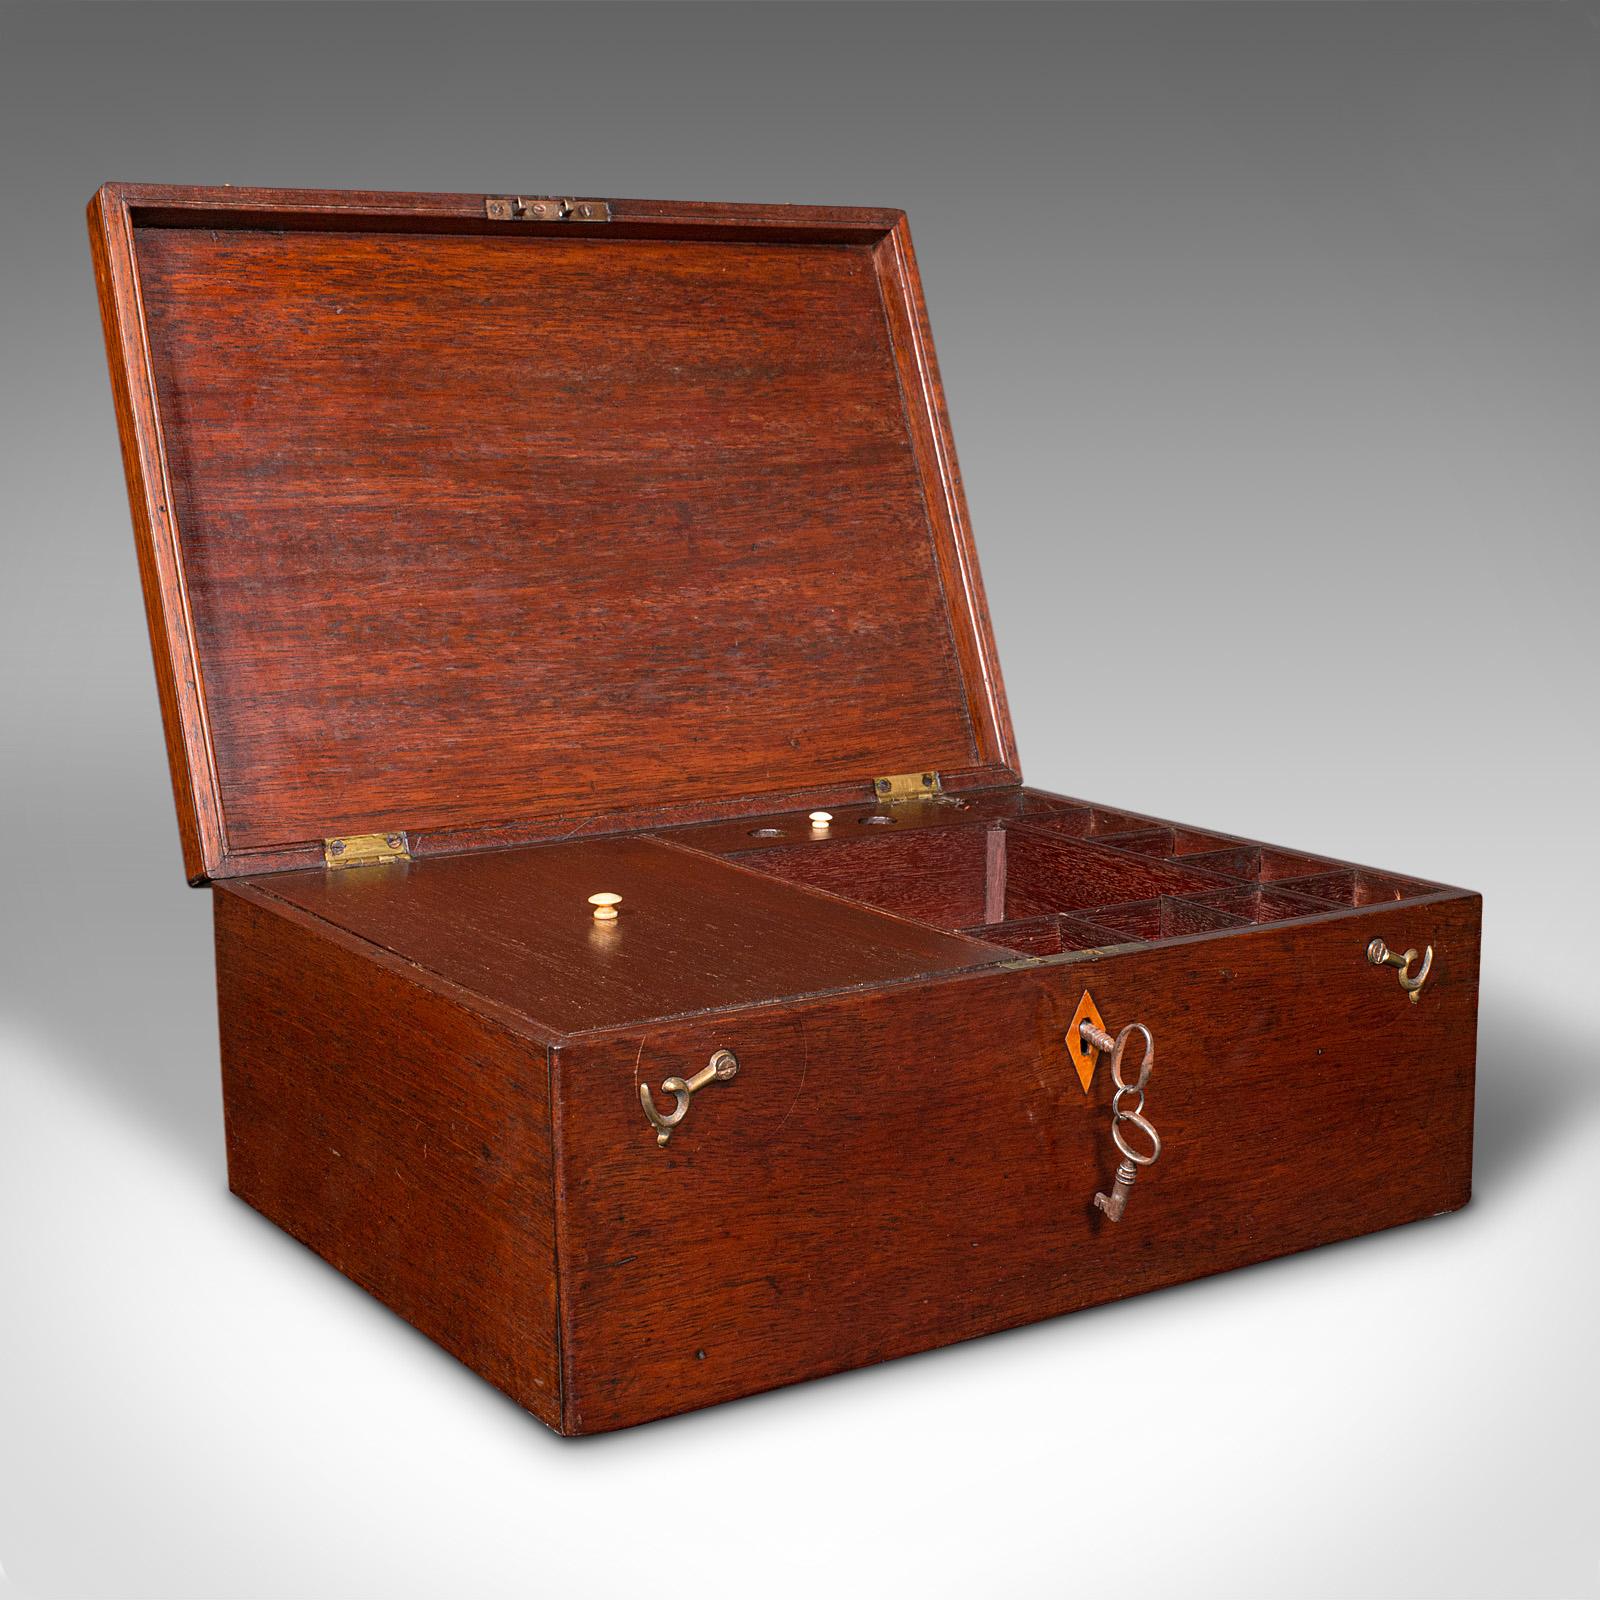 Dies ist ein antikes Schmuckkästchen eines reisenden Schmuckverkäufers. Ein englischer Koffer aus Mahagoni und Zedernholz aus der frühen viktorianischen Periode, um 1850.

Schön ausgestattete Reisekiste mit nützlichem Stauraum
Zeigt eine